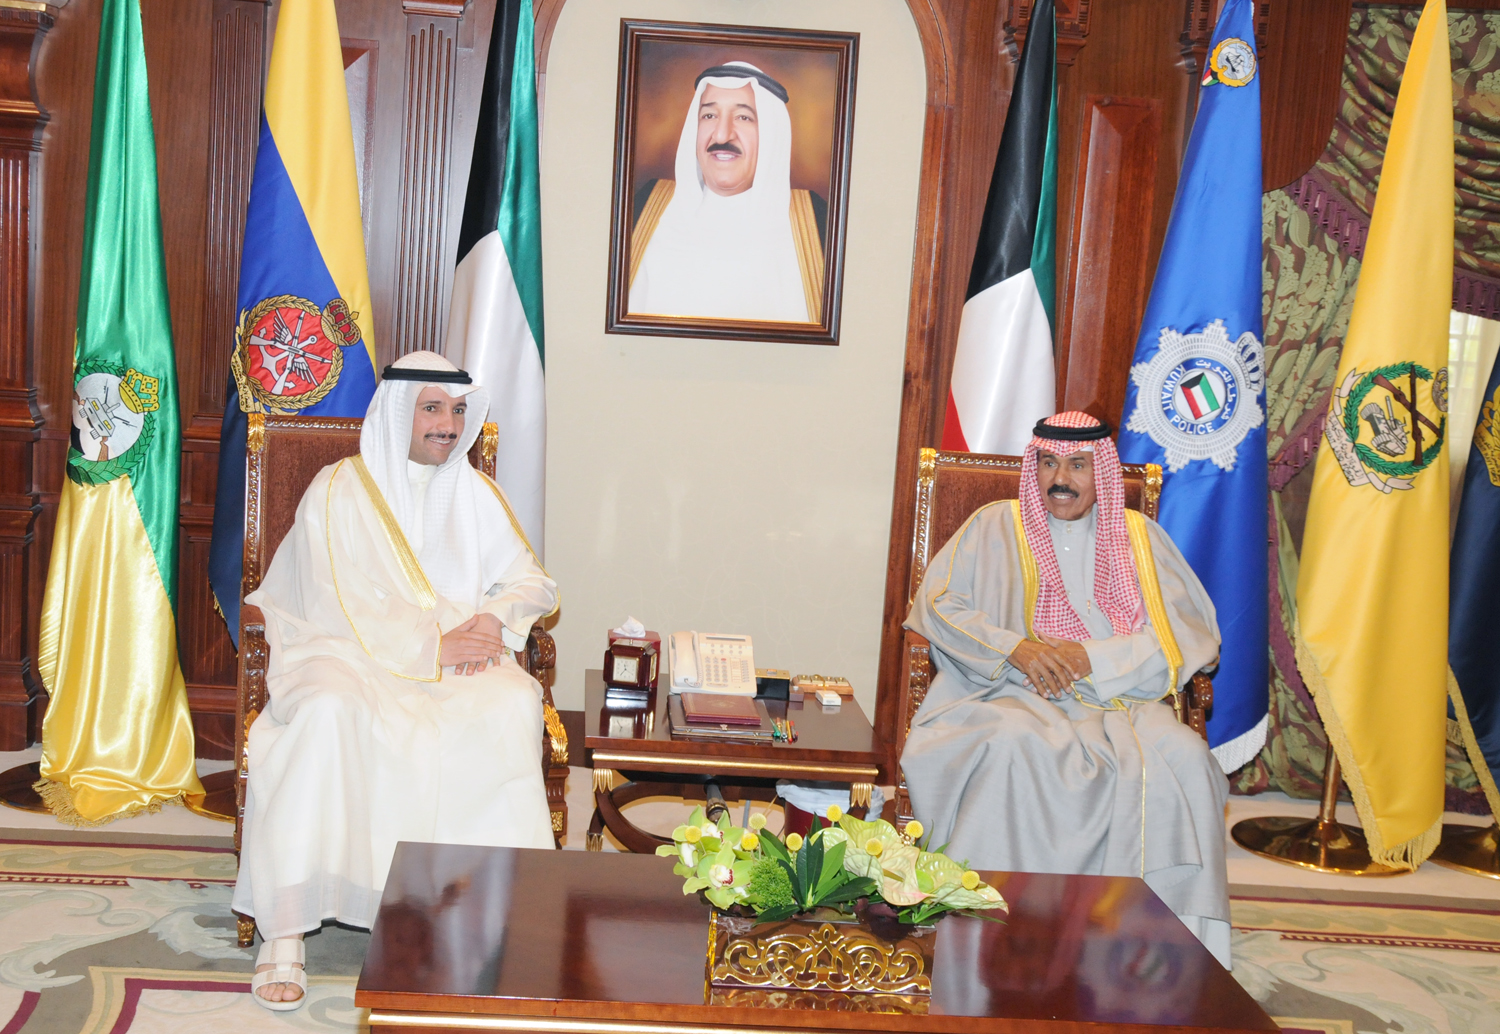 His Highness the Crown Prince Sheikh Nawaf Al-Ahmad Al-Jaber Al-Sabah received National Assembly Speaker Marzouq Ali Al-Ghanim